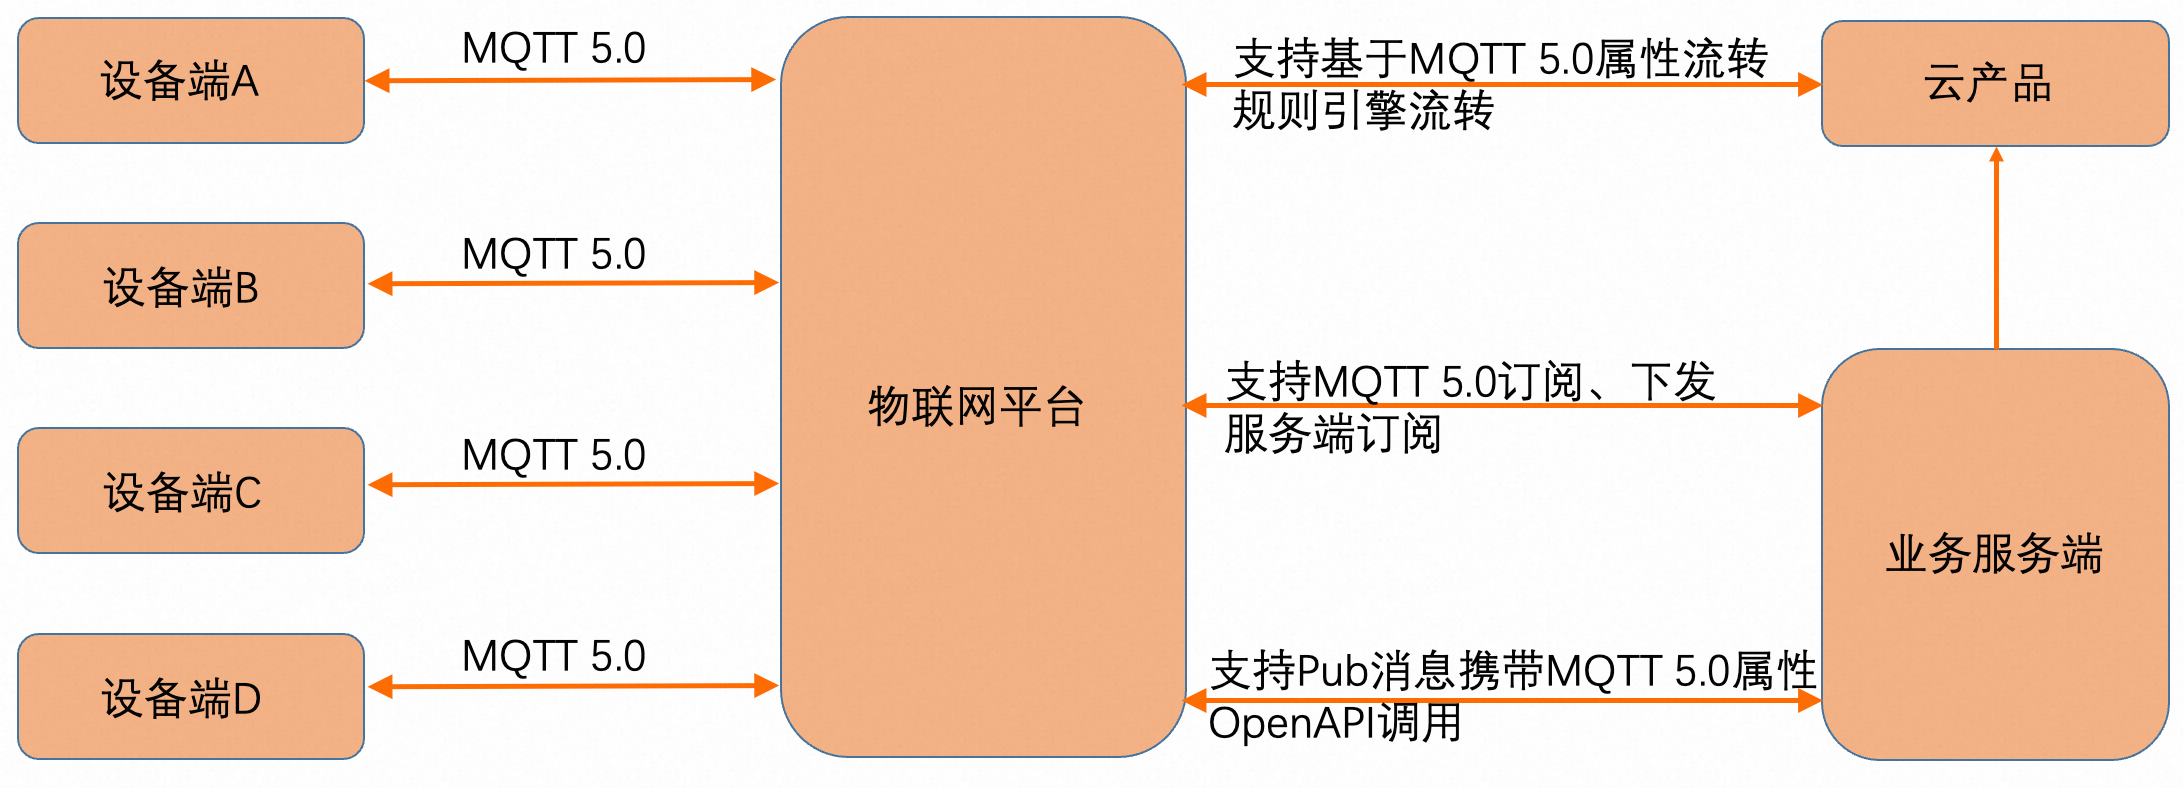 阿里云接入MQTT 5.0服务器搭建与测试-MQTT中文站